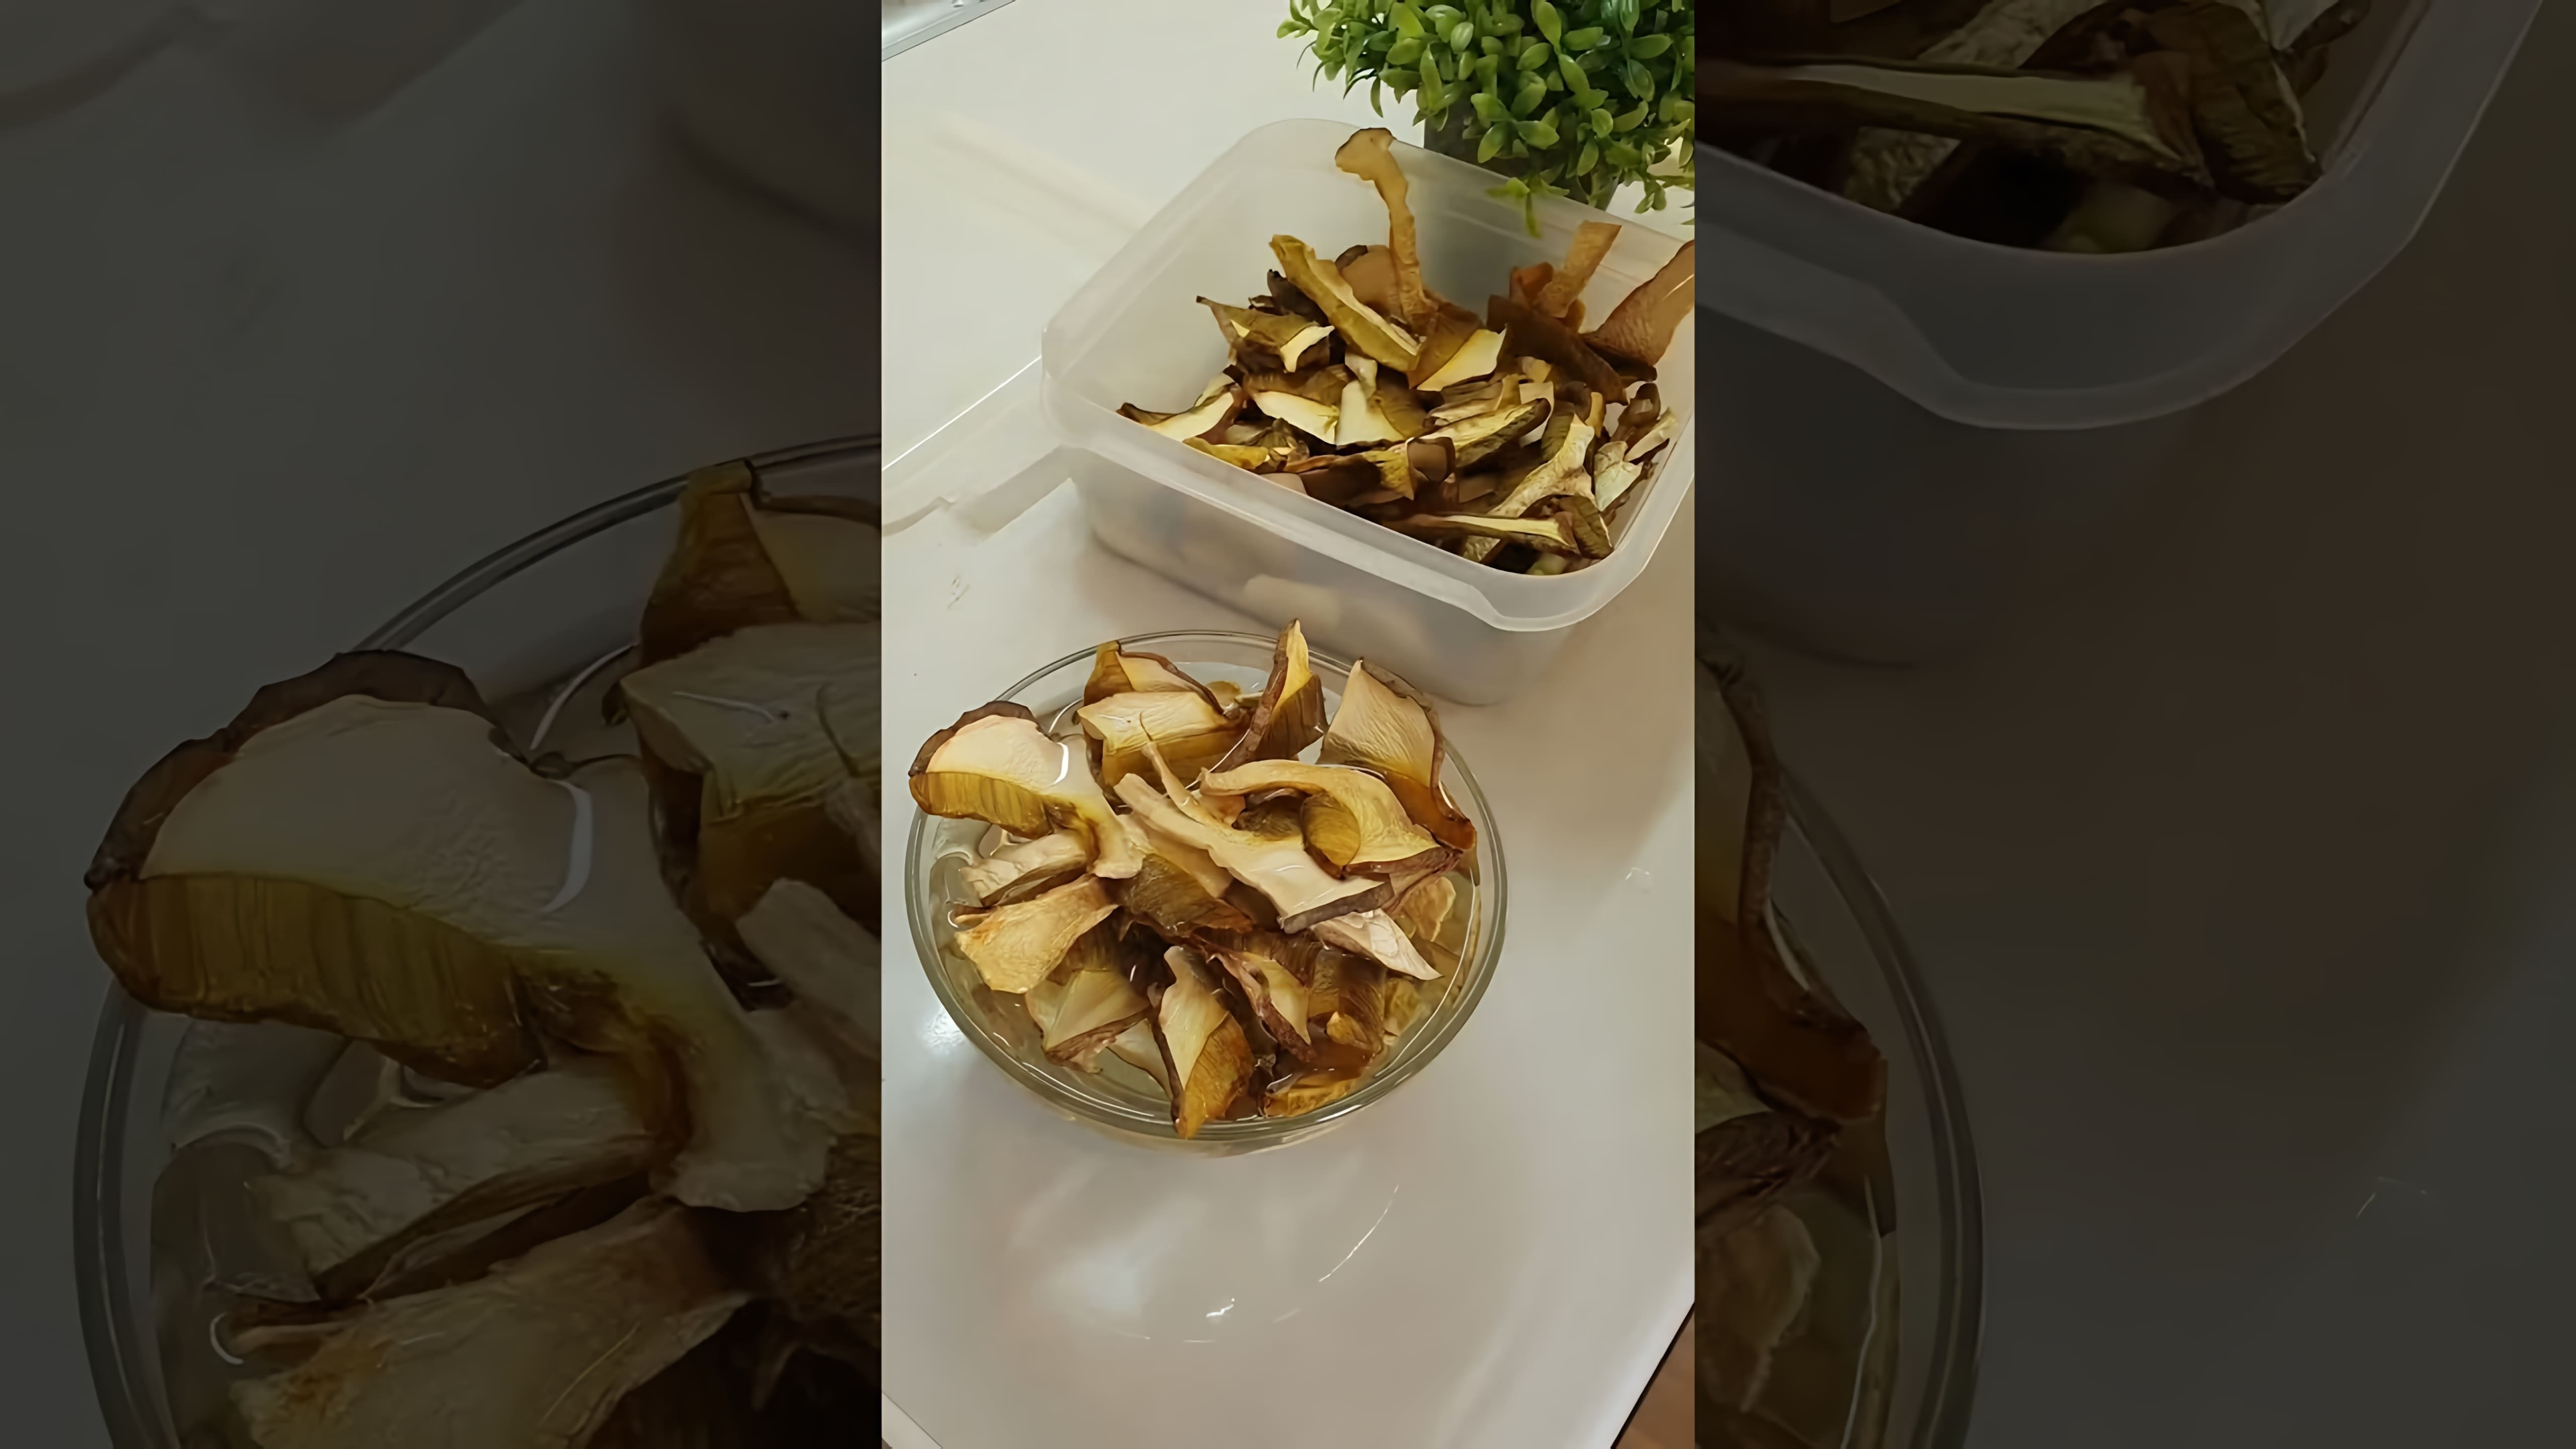 В этом видео демонстрируется процесс приготовления супа с белыми сушеными грибами